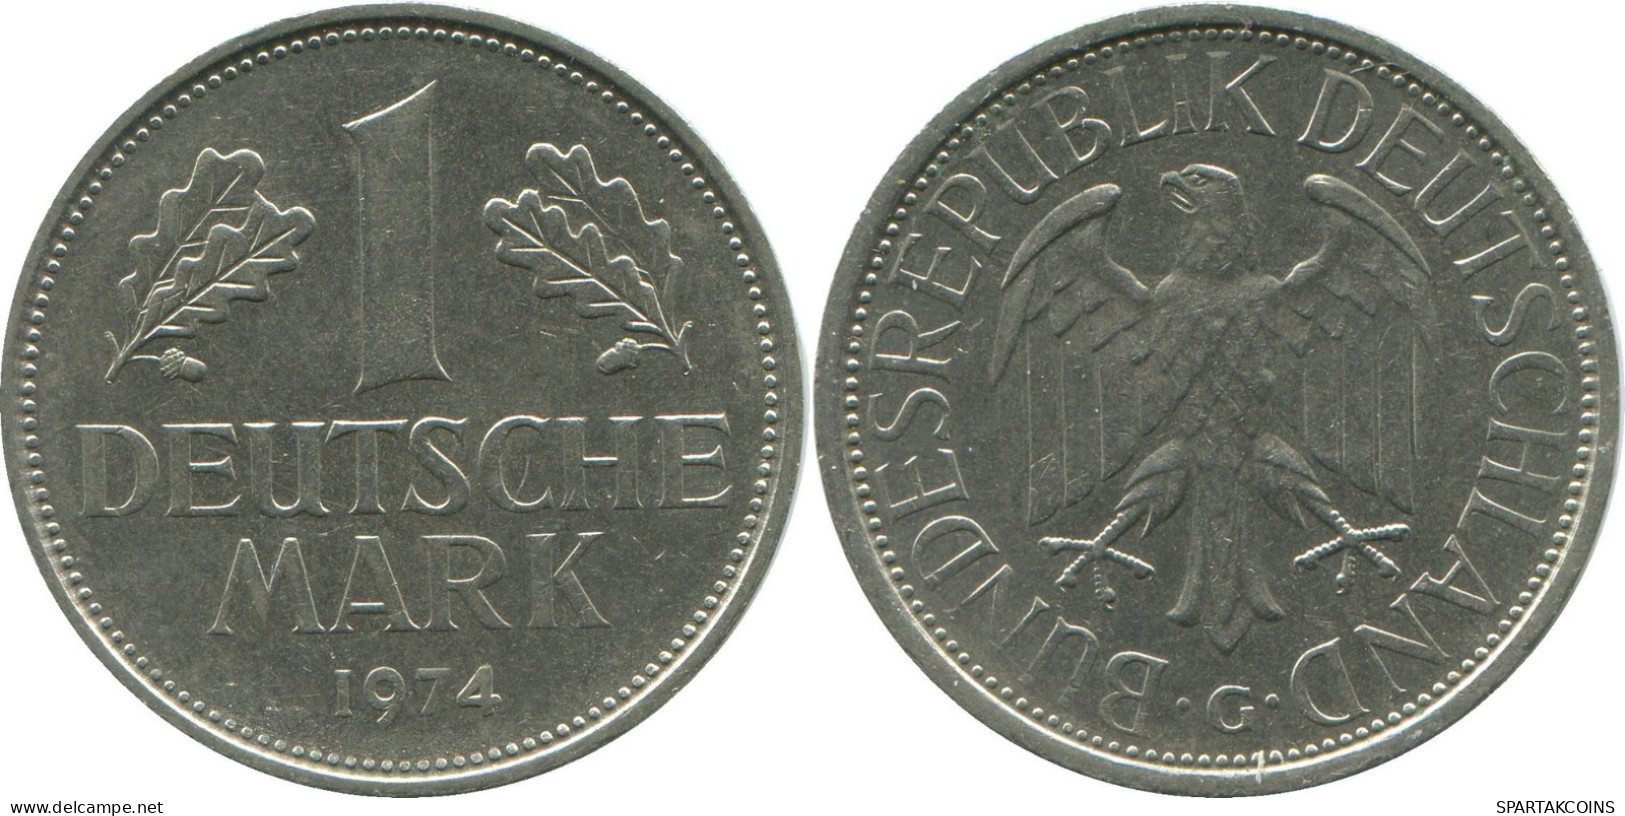 1 MARK 1974 G BRD ALEMANIA Moneda GERMANY #DE10417.5.E.A - 1 Marco